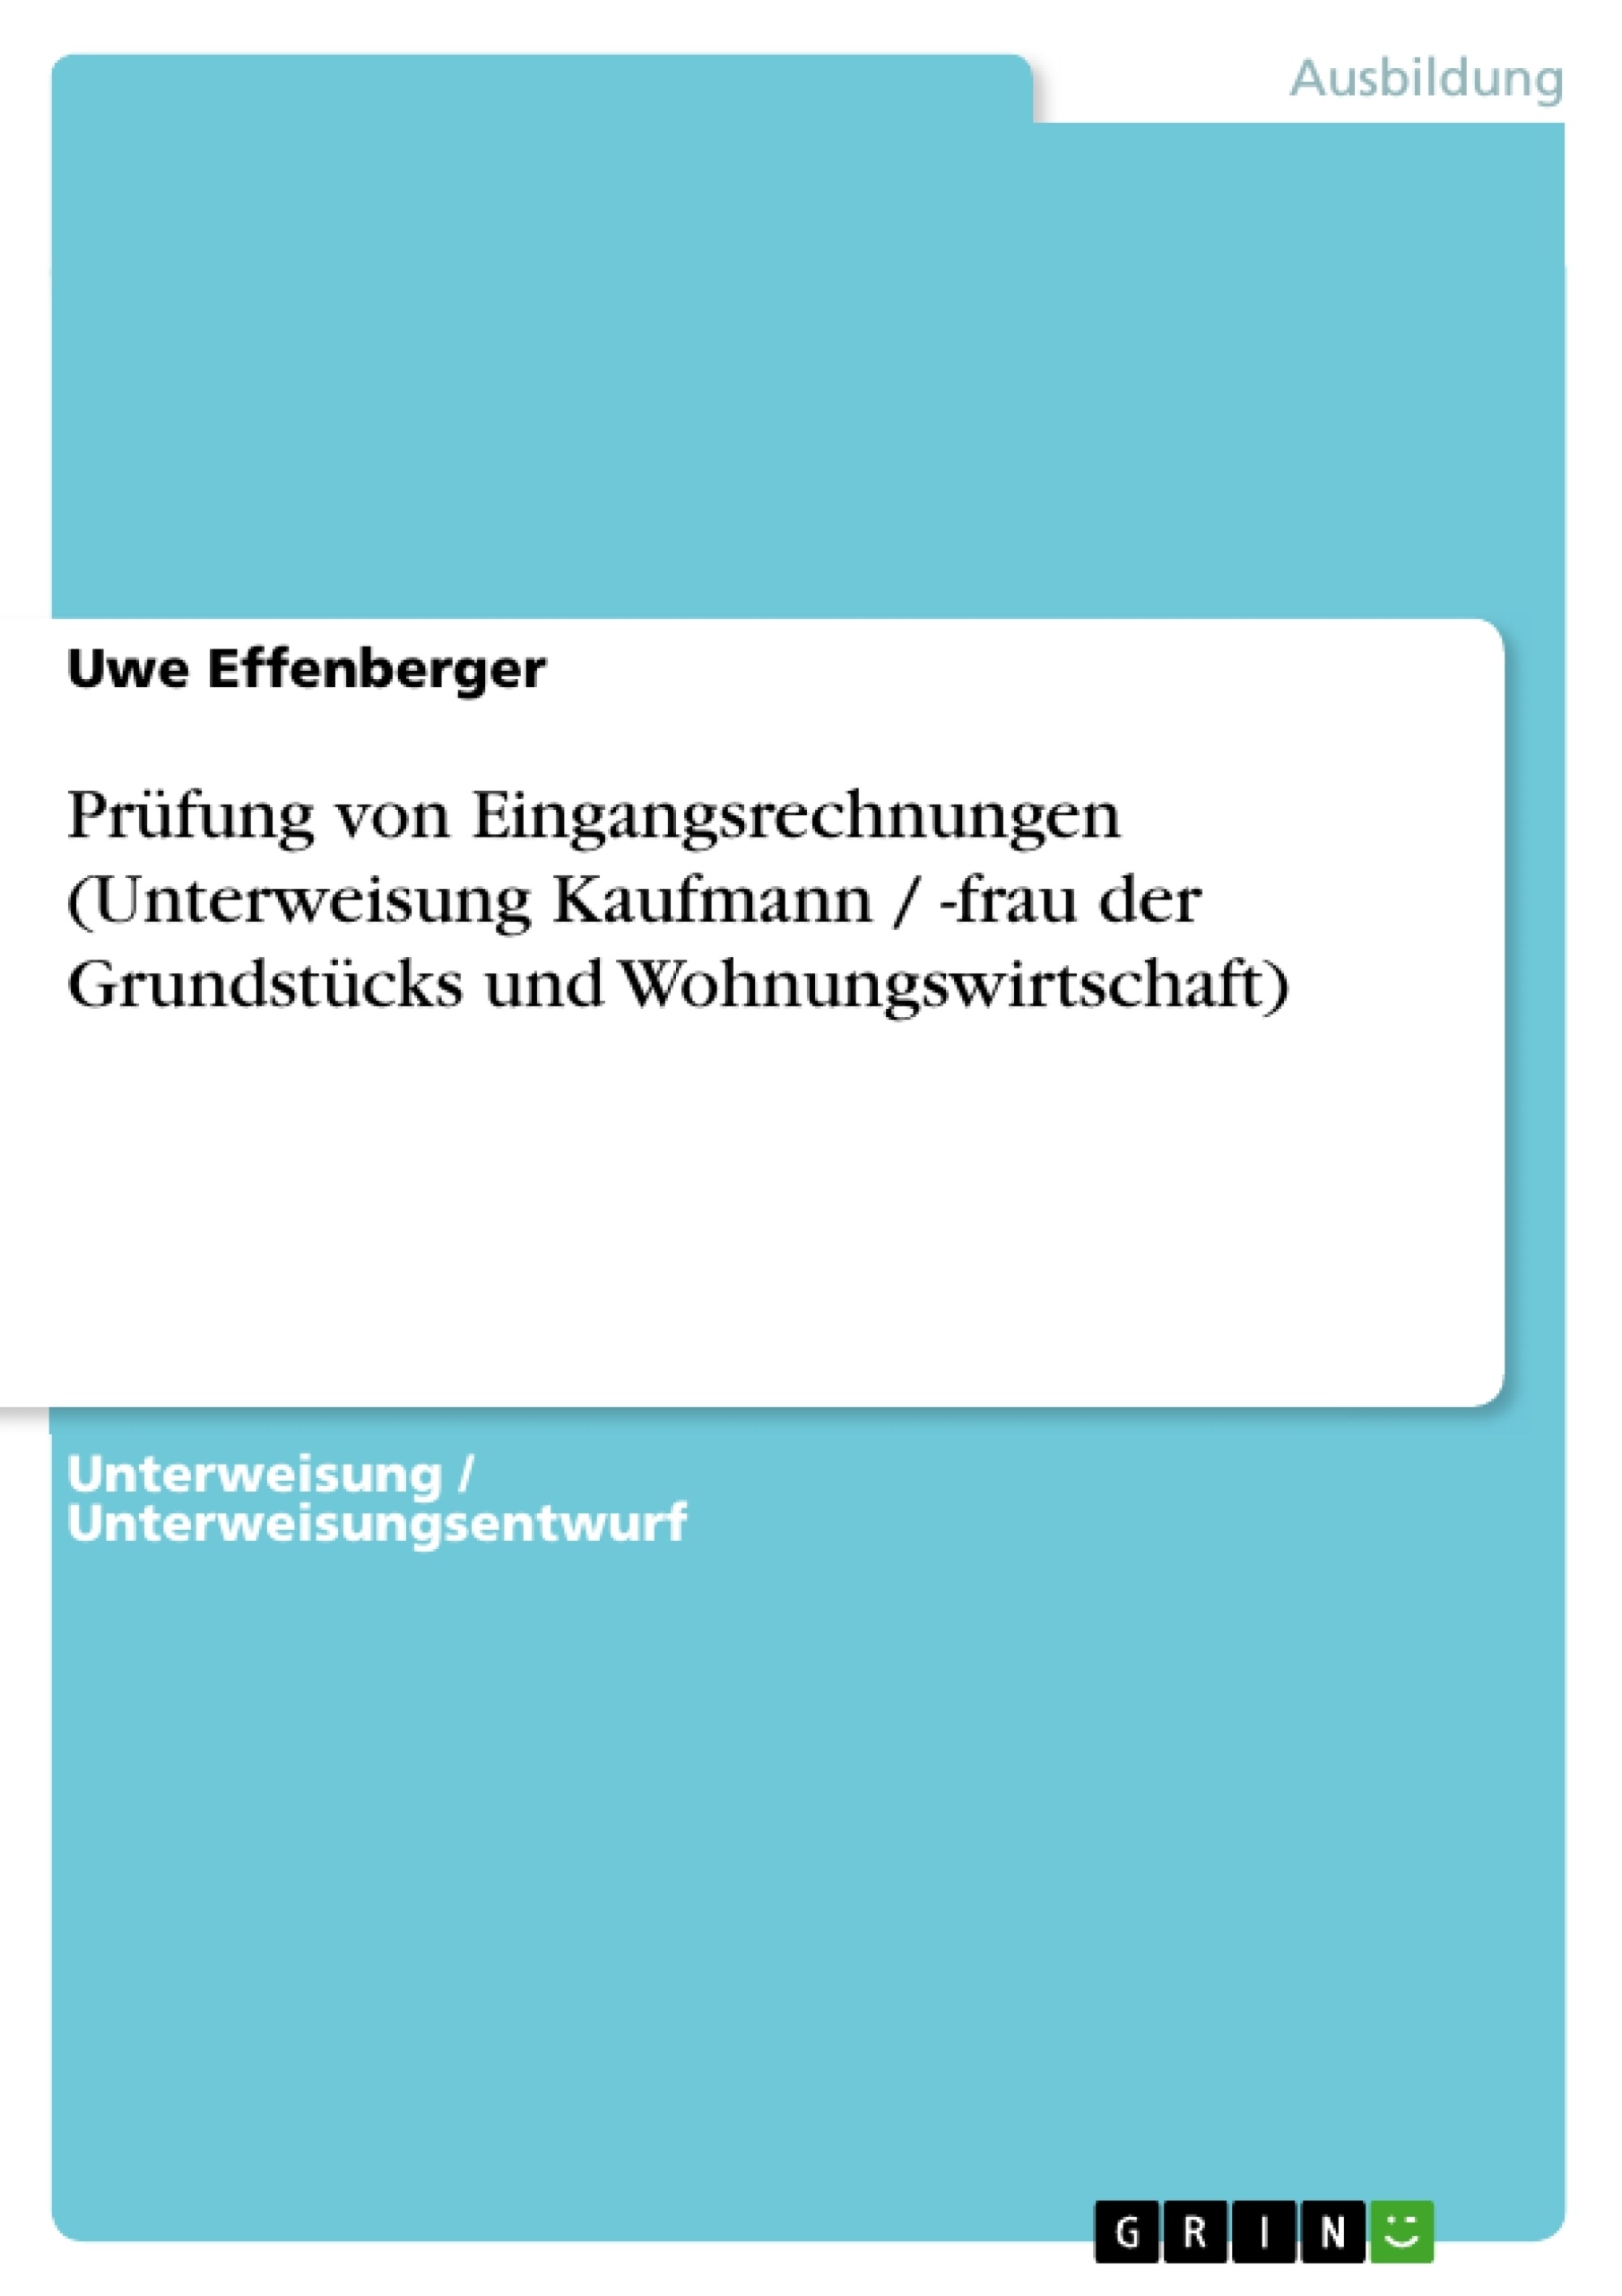 Titre: Prüfung von Eingangsrechnungen (Unterweisung Kaufmann / -frau der Grundstücks und Wohnungswirtschaft)